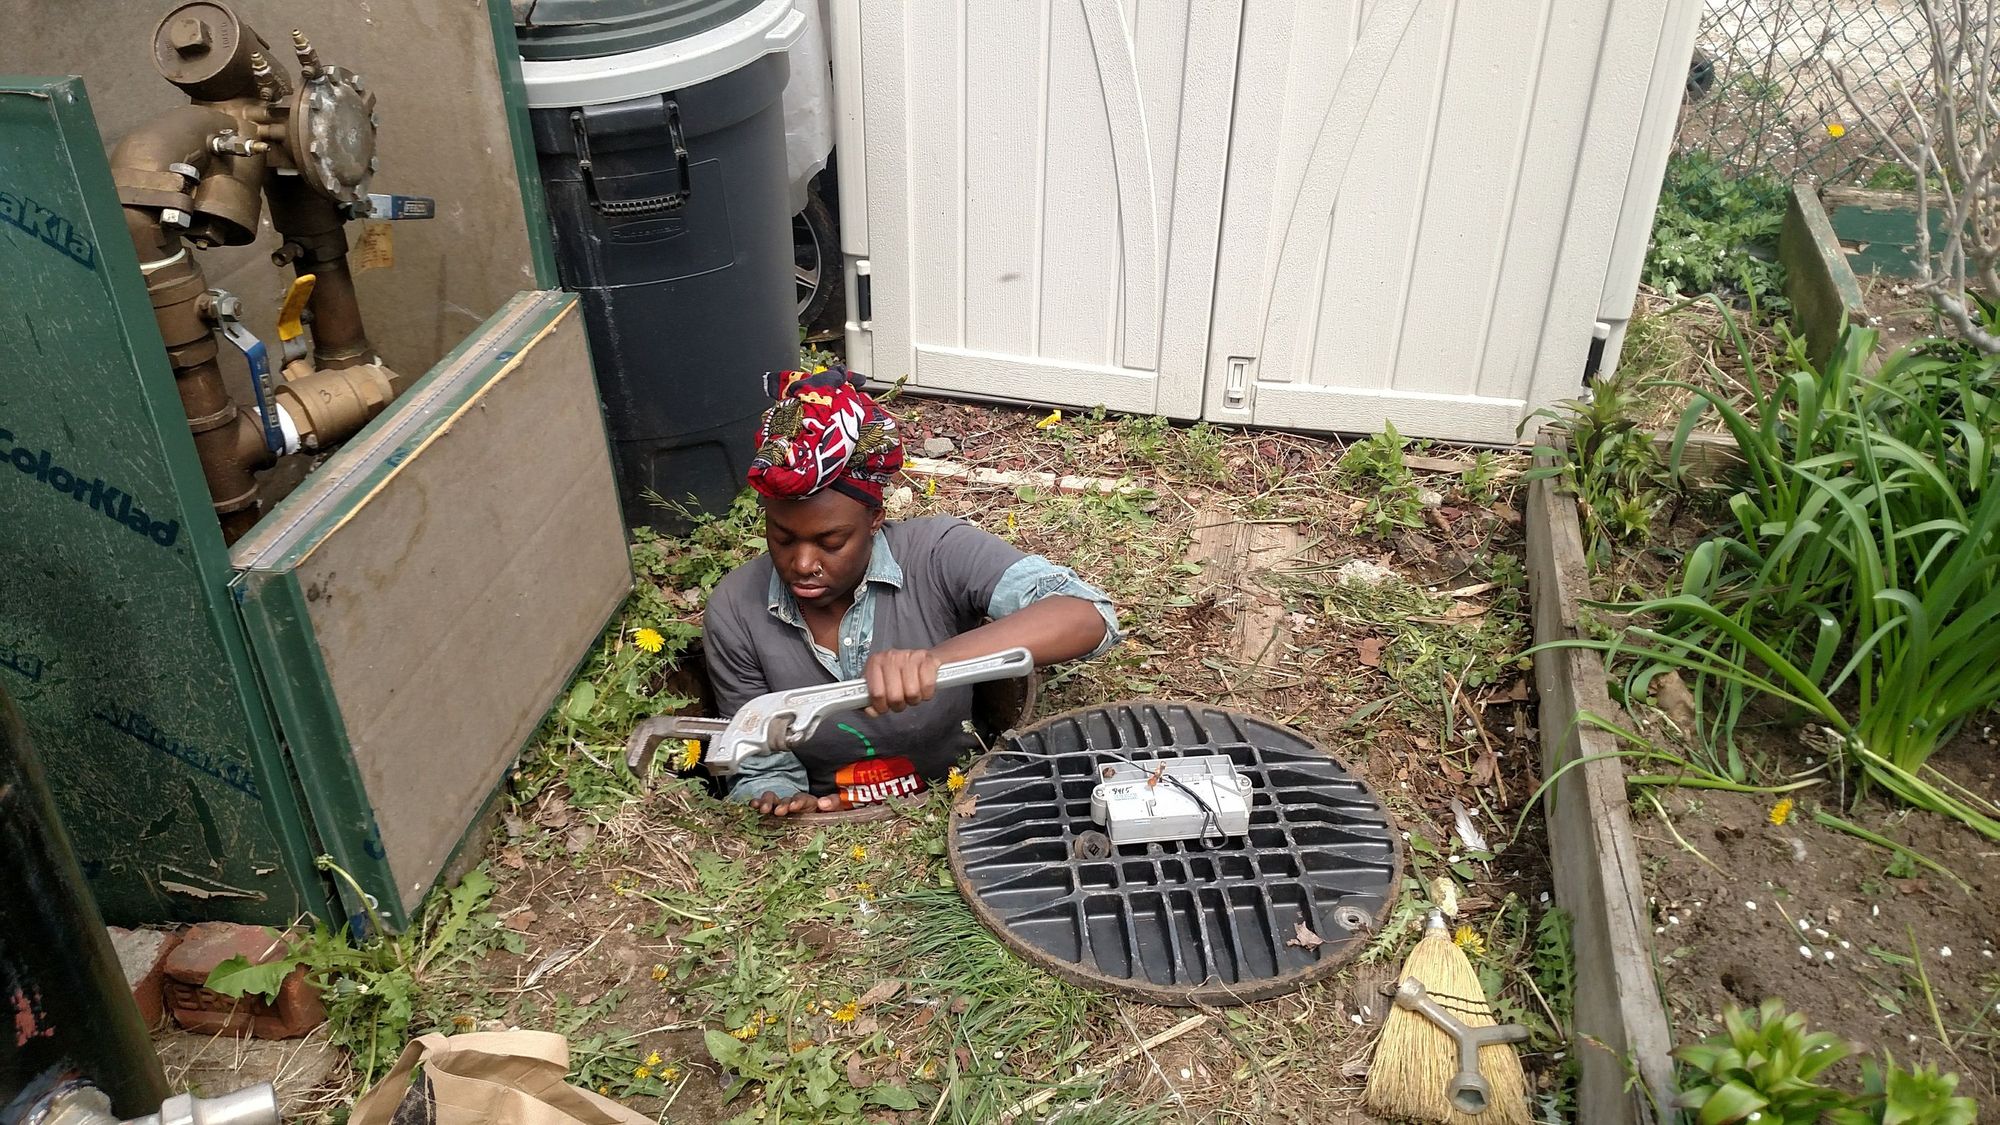 Sawdayah Brownlee performing water systems maintenance in a manhole in a garden, from the Merrick-Marsden Neighbors Association Garden, a BQLT garden, Jamaica, Queens